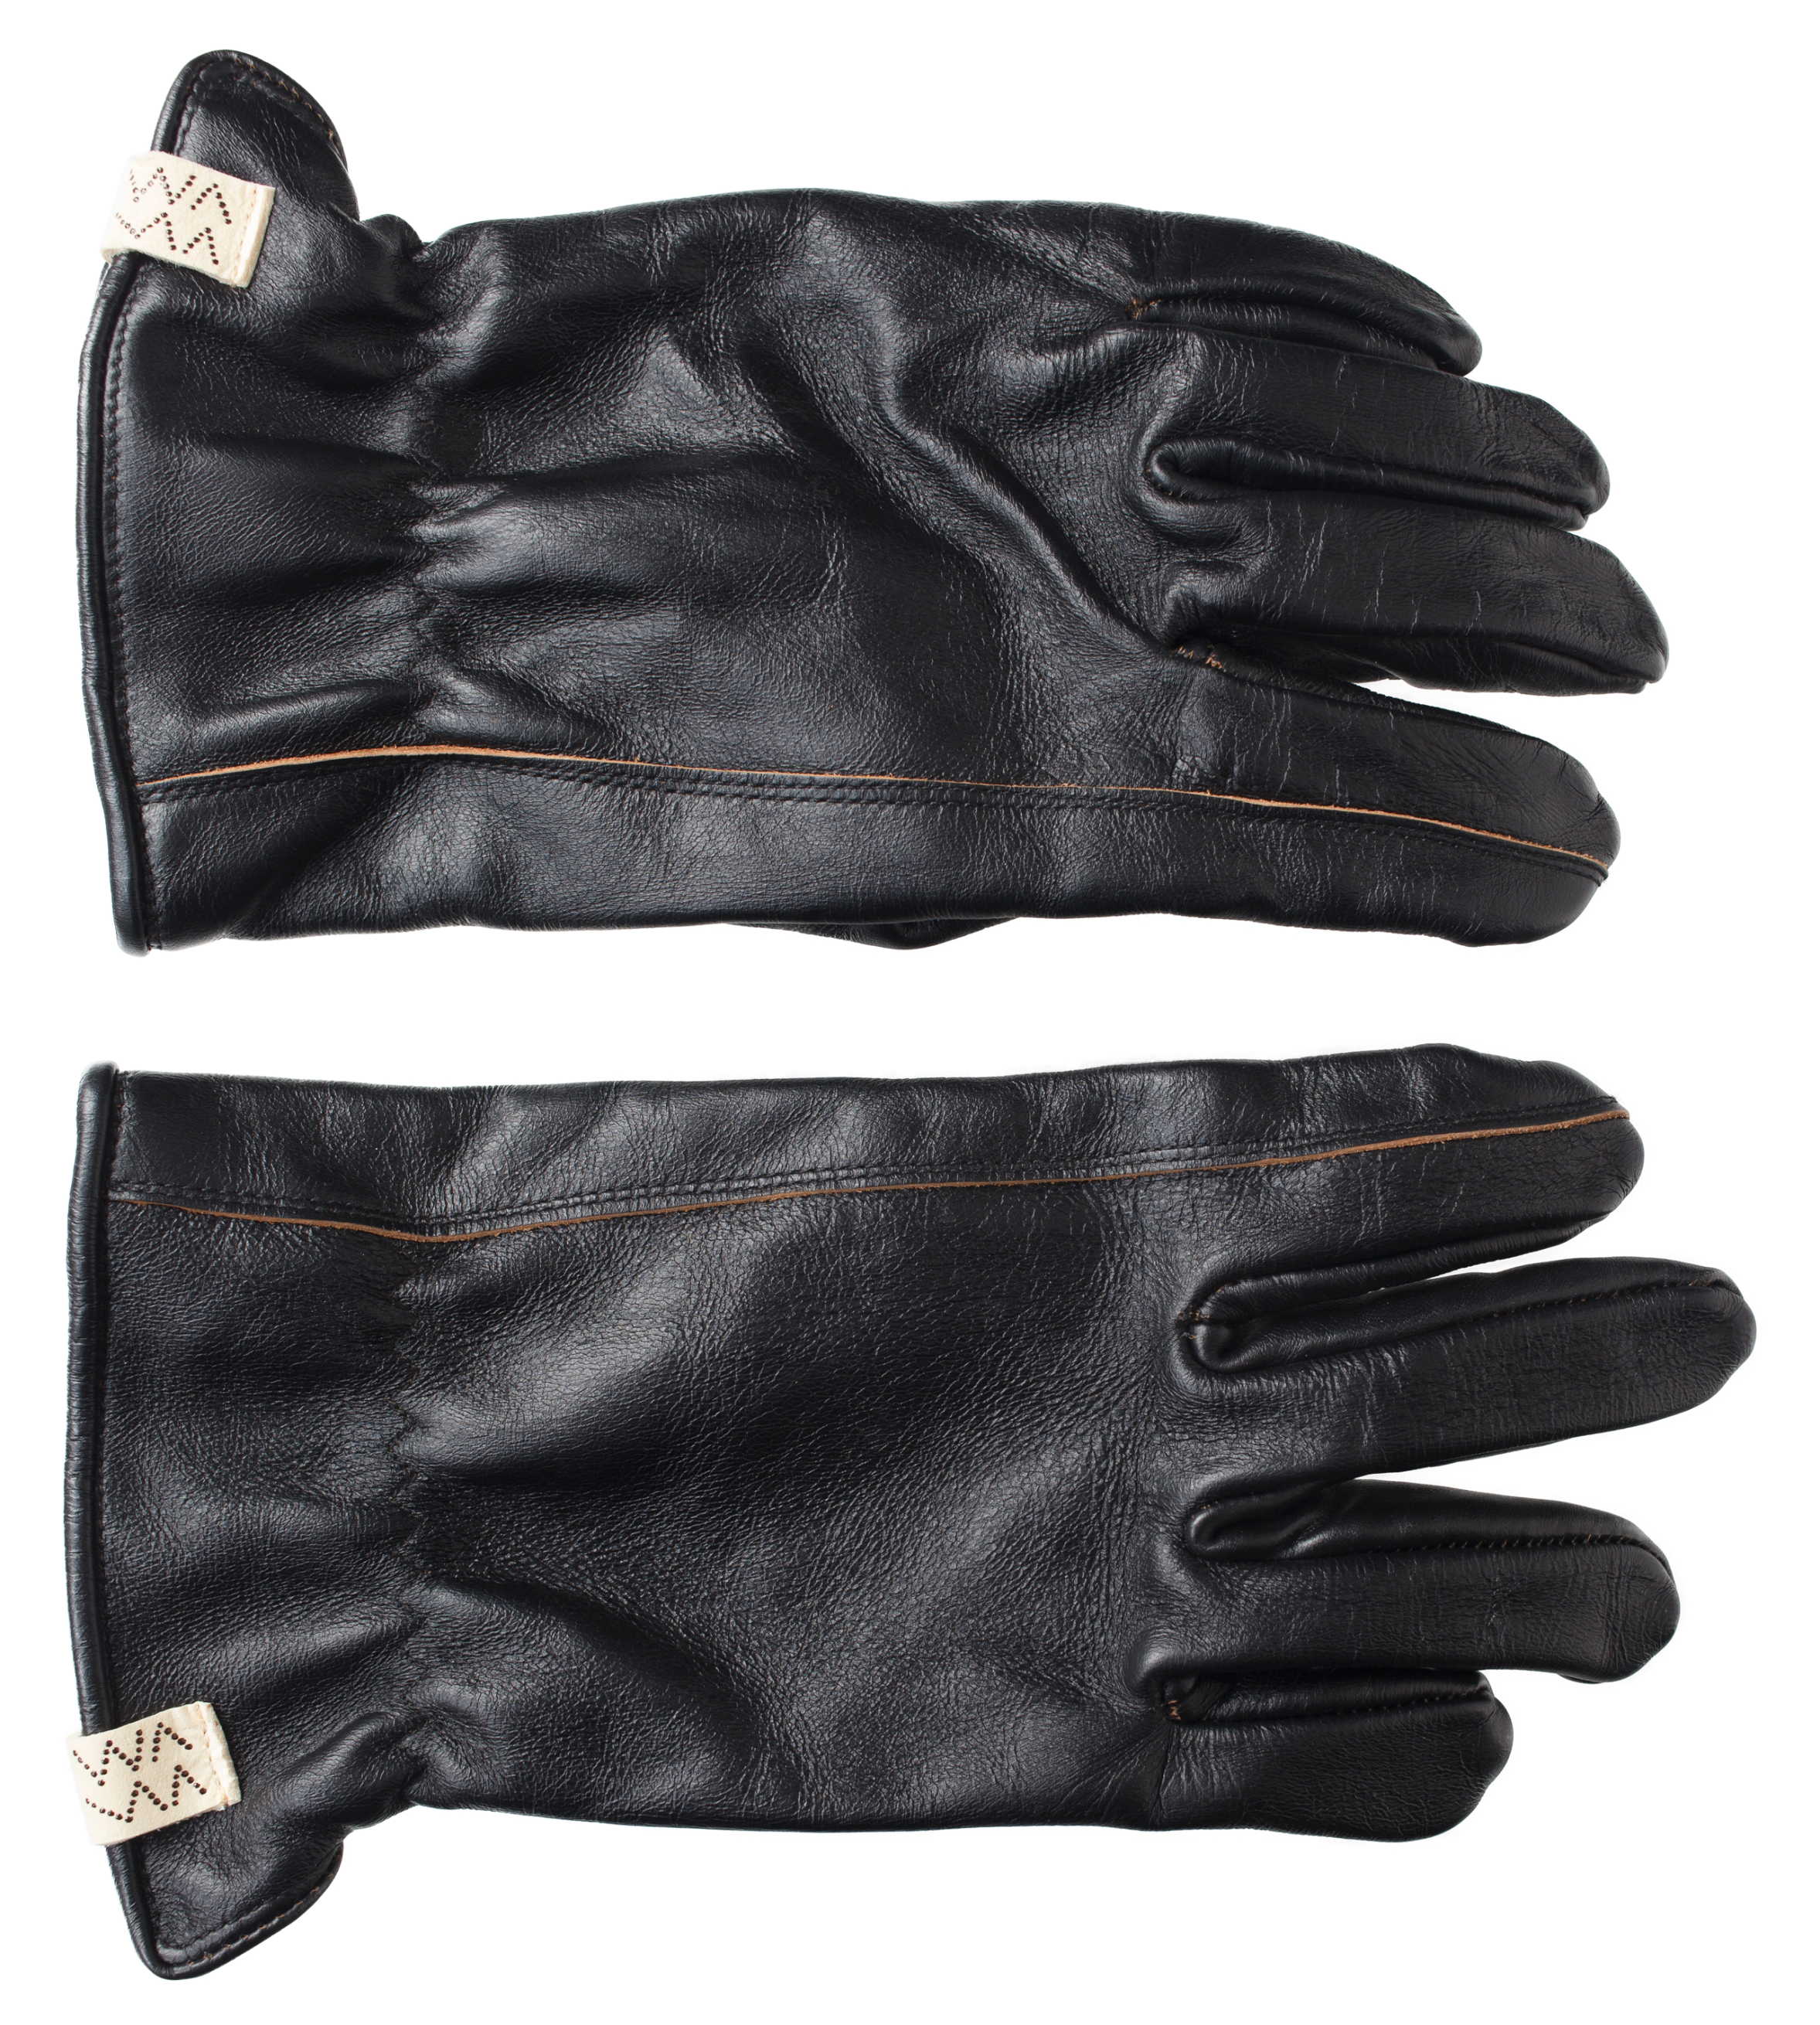 Кожаные перчатки с контрастными швами visvim 0124103003008, размер S/M;M/L - фото 2